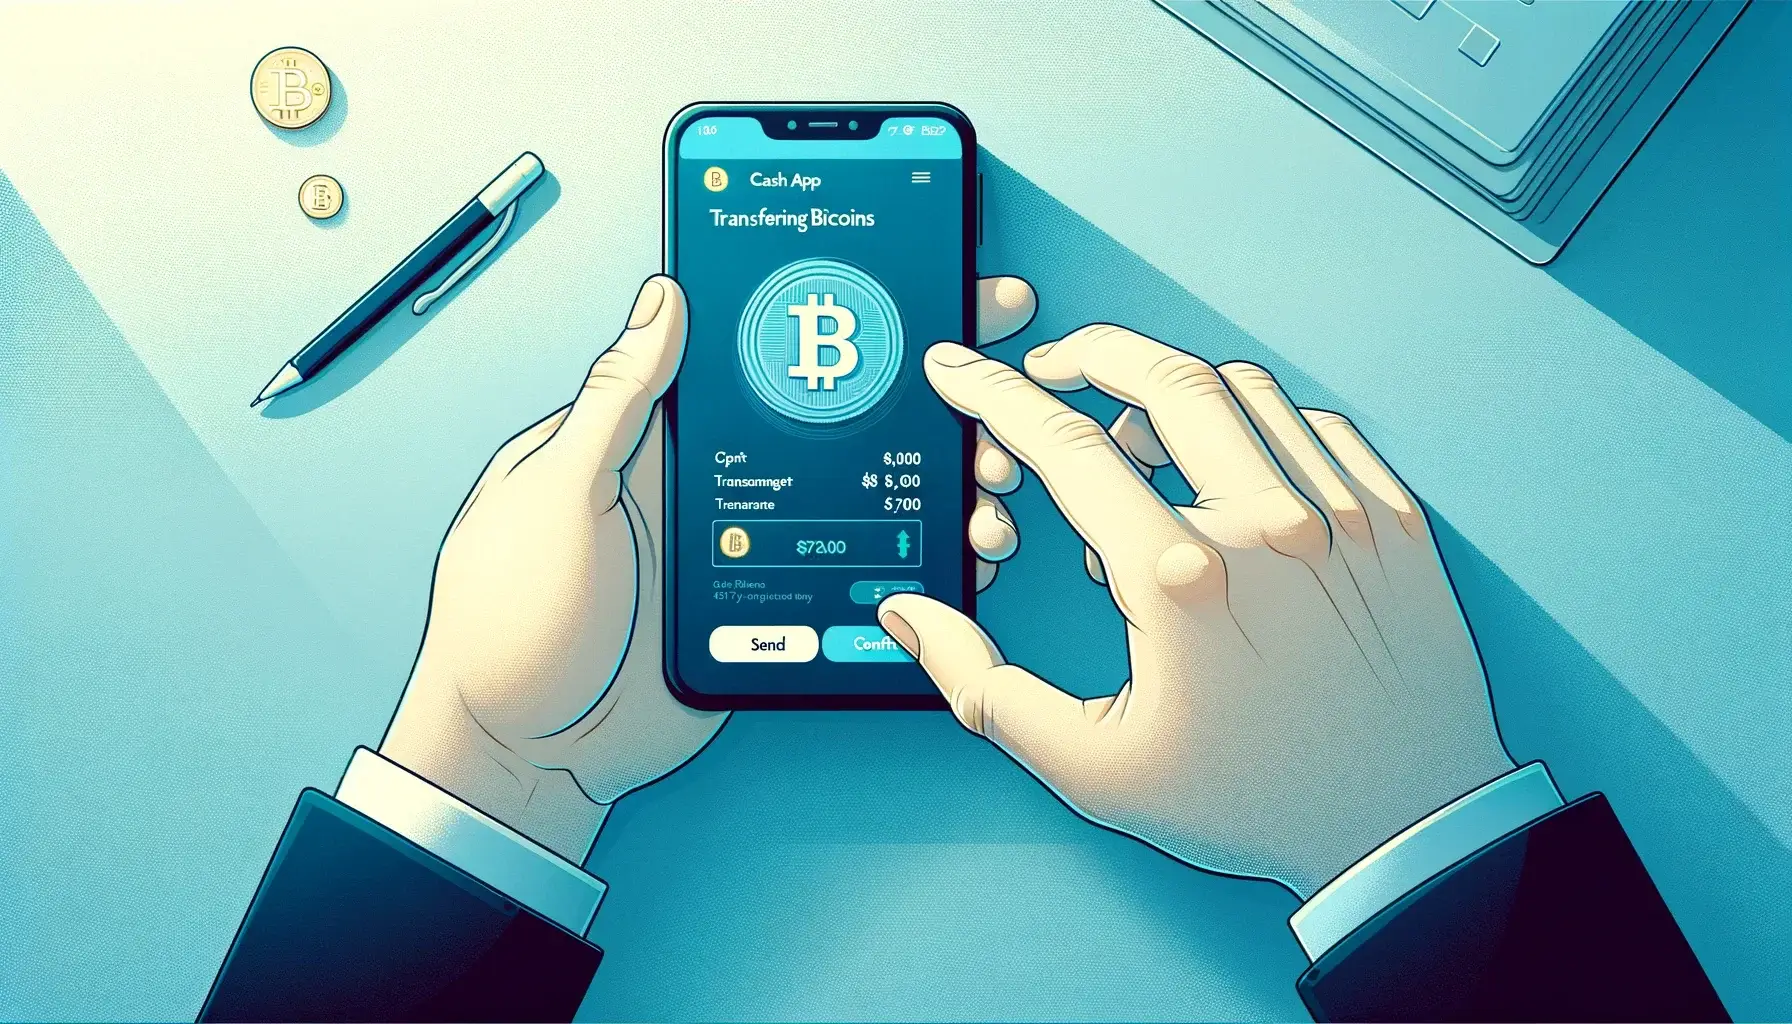 Cash App Bitcoin Wallet Illustration